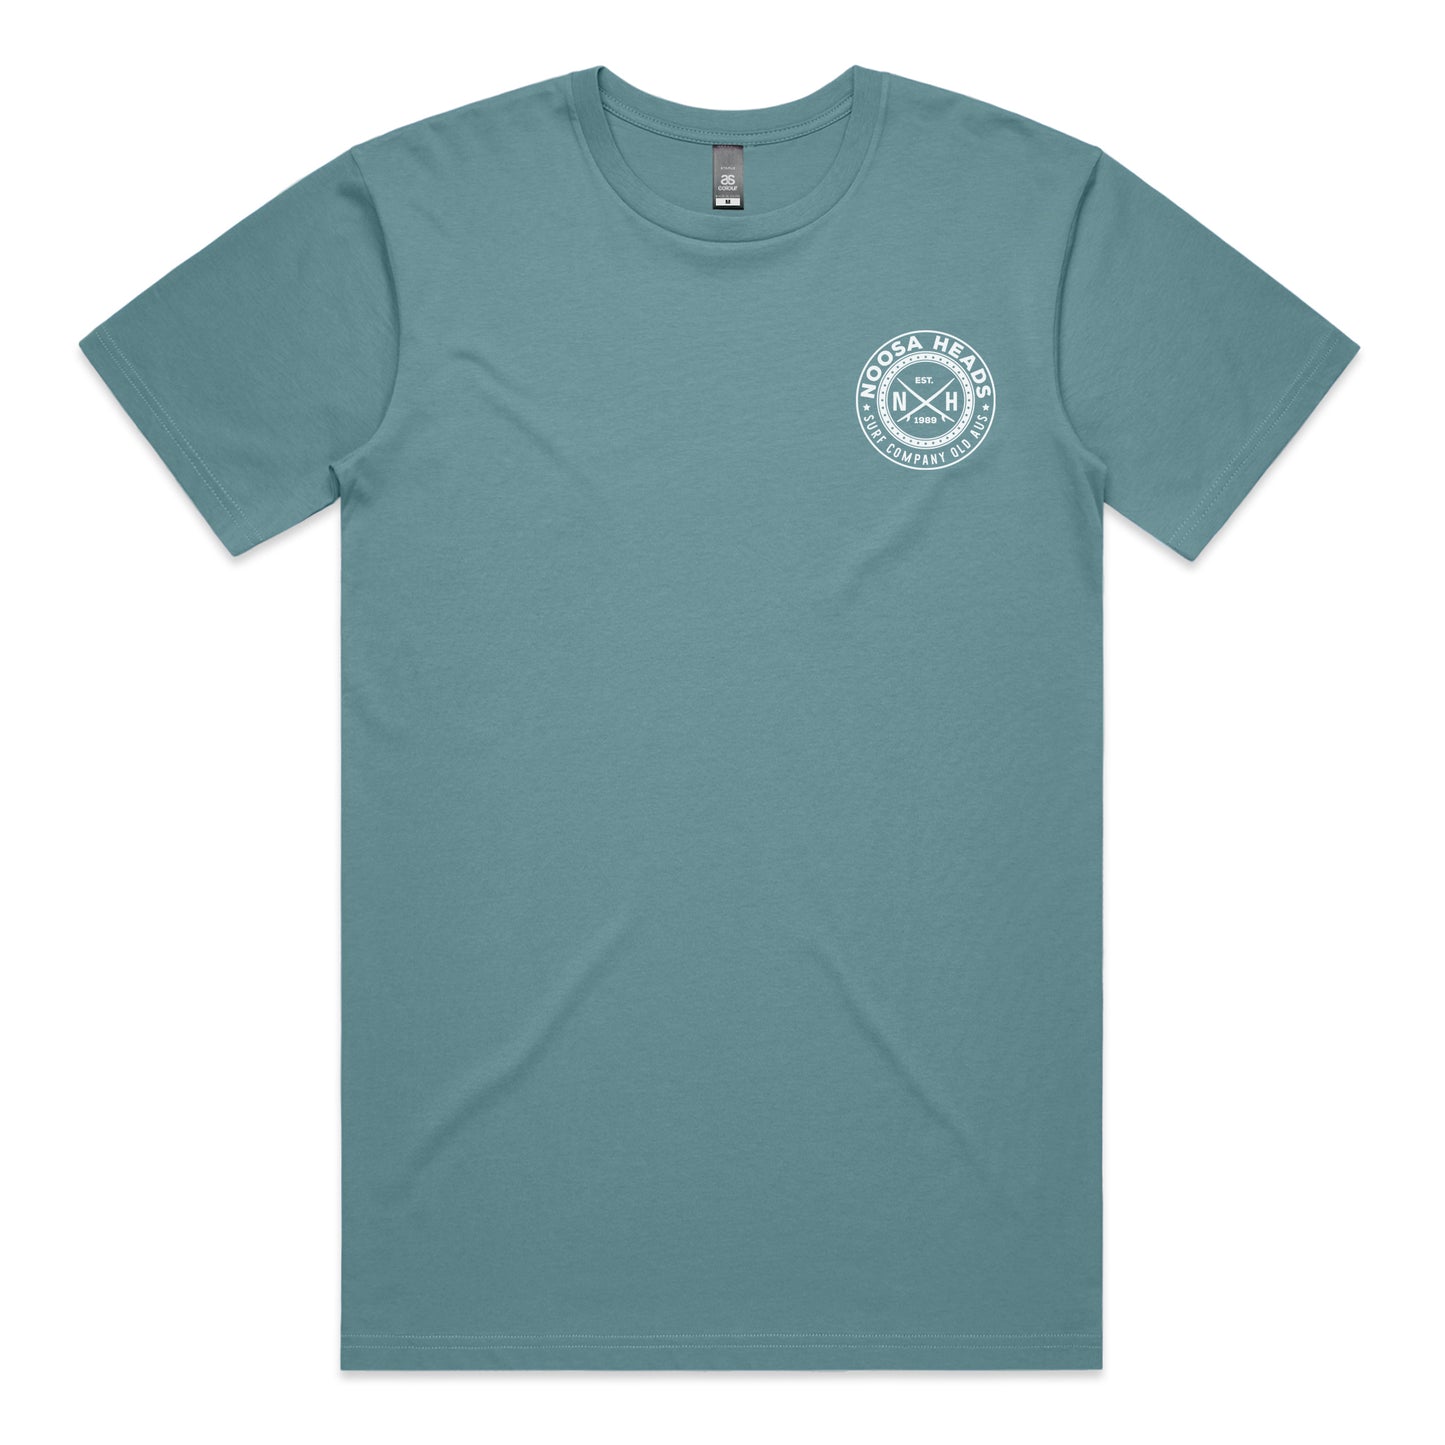 1989 T-shirt - Slate Blue